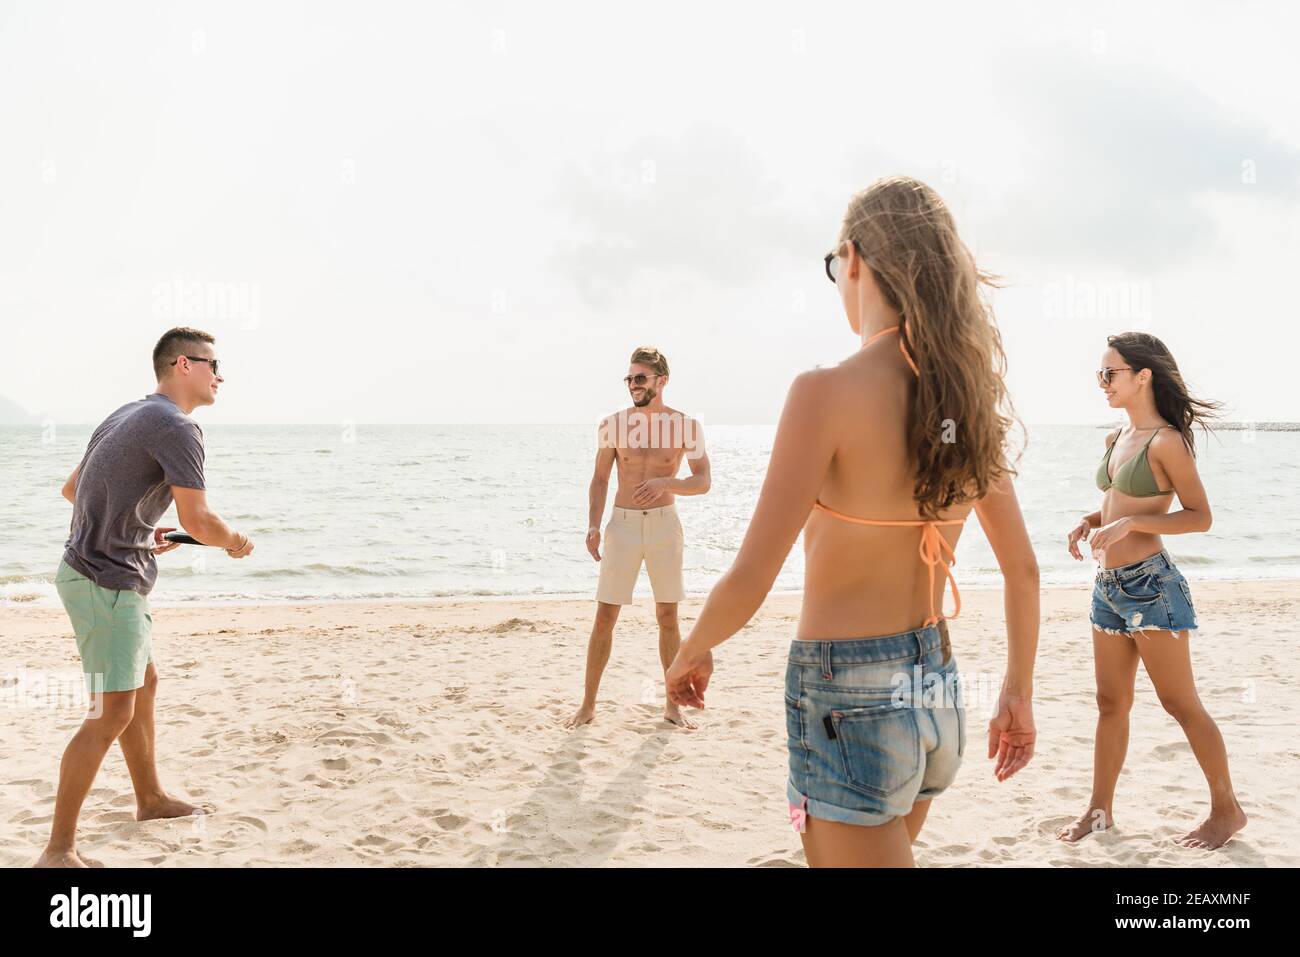 Atractivo grupo de amigos que disfrutan jugando al juego de playa juntos en verano Foto de stock